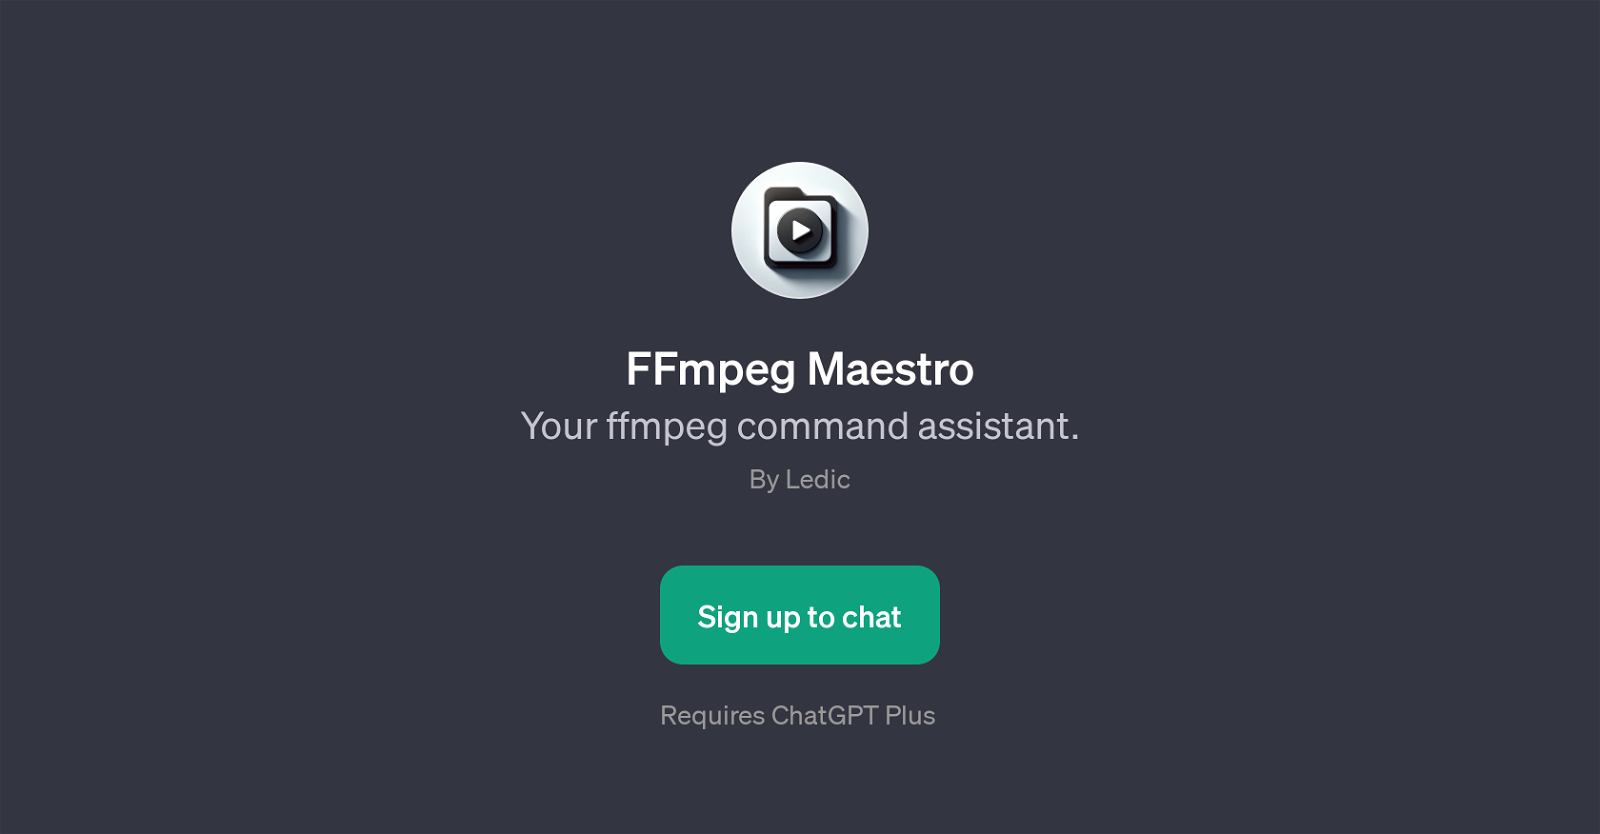 FFmpeg Maestro website